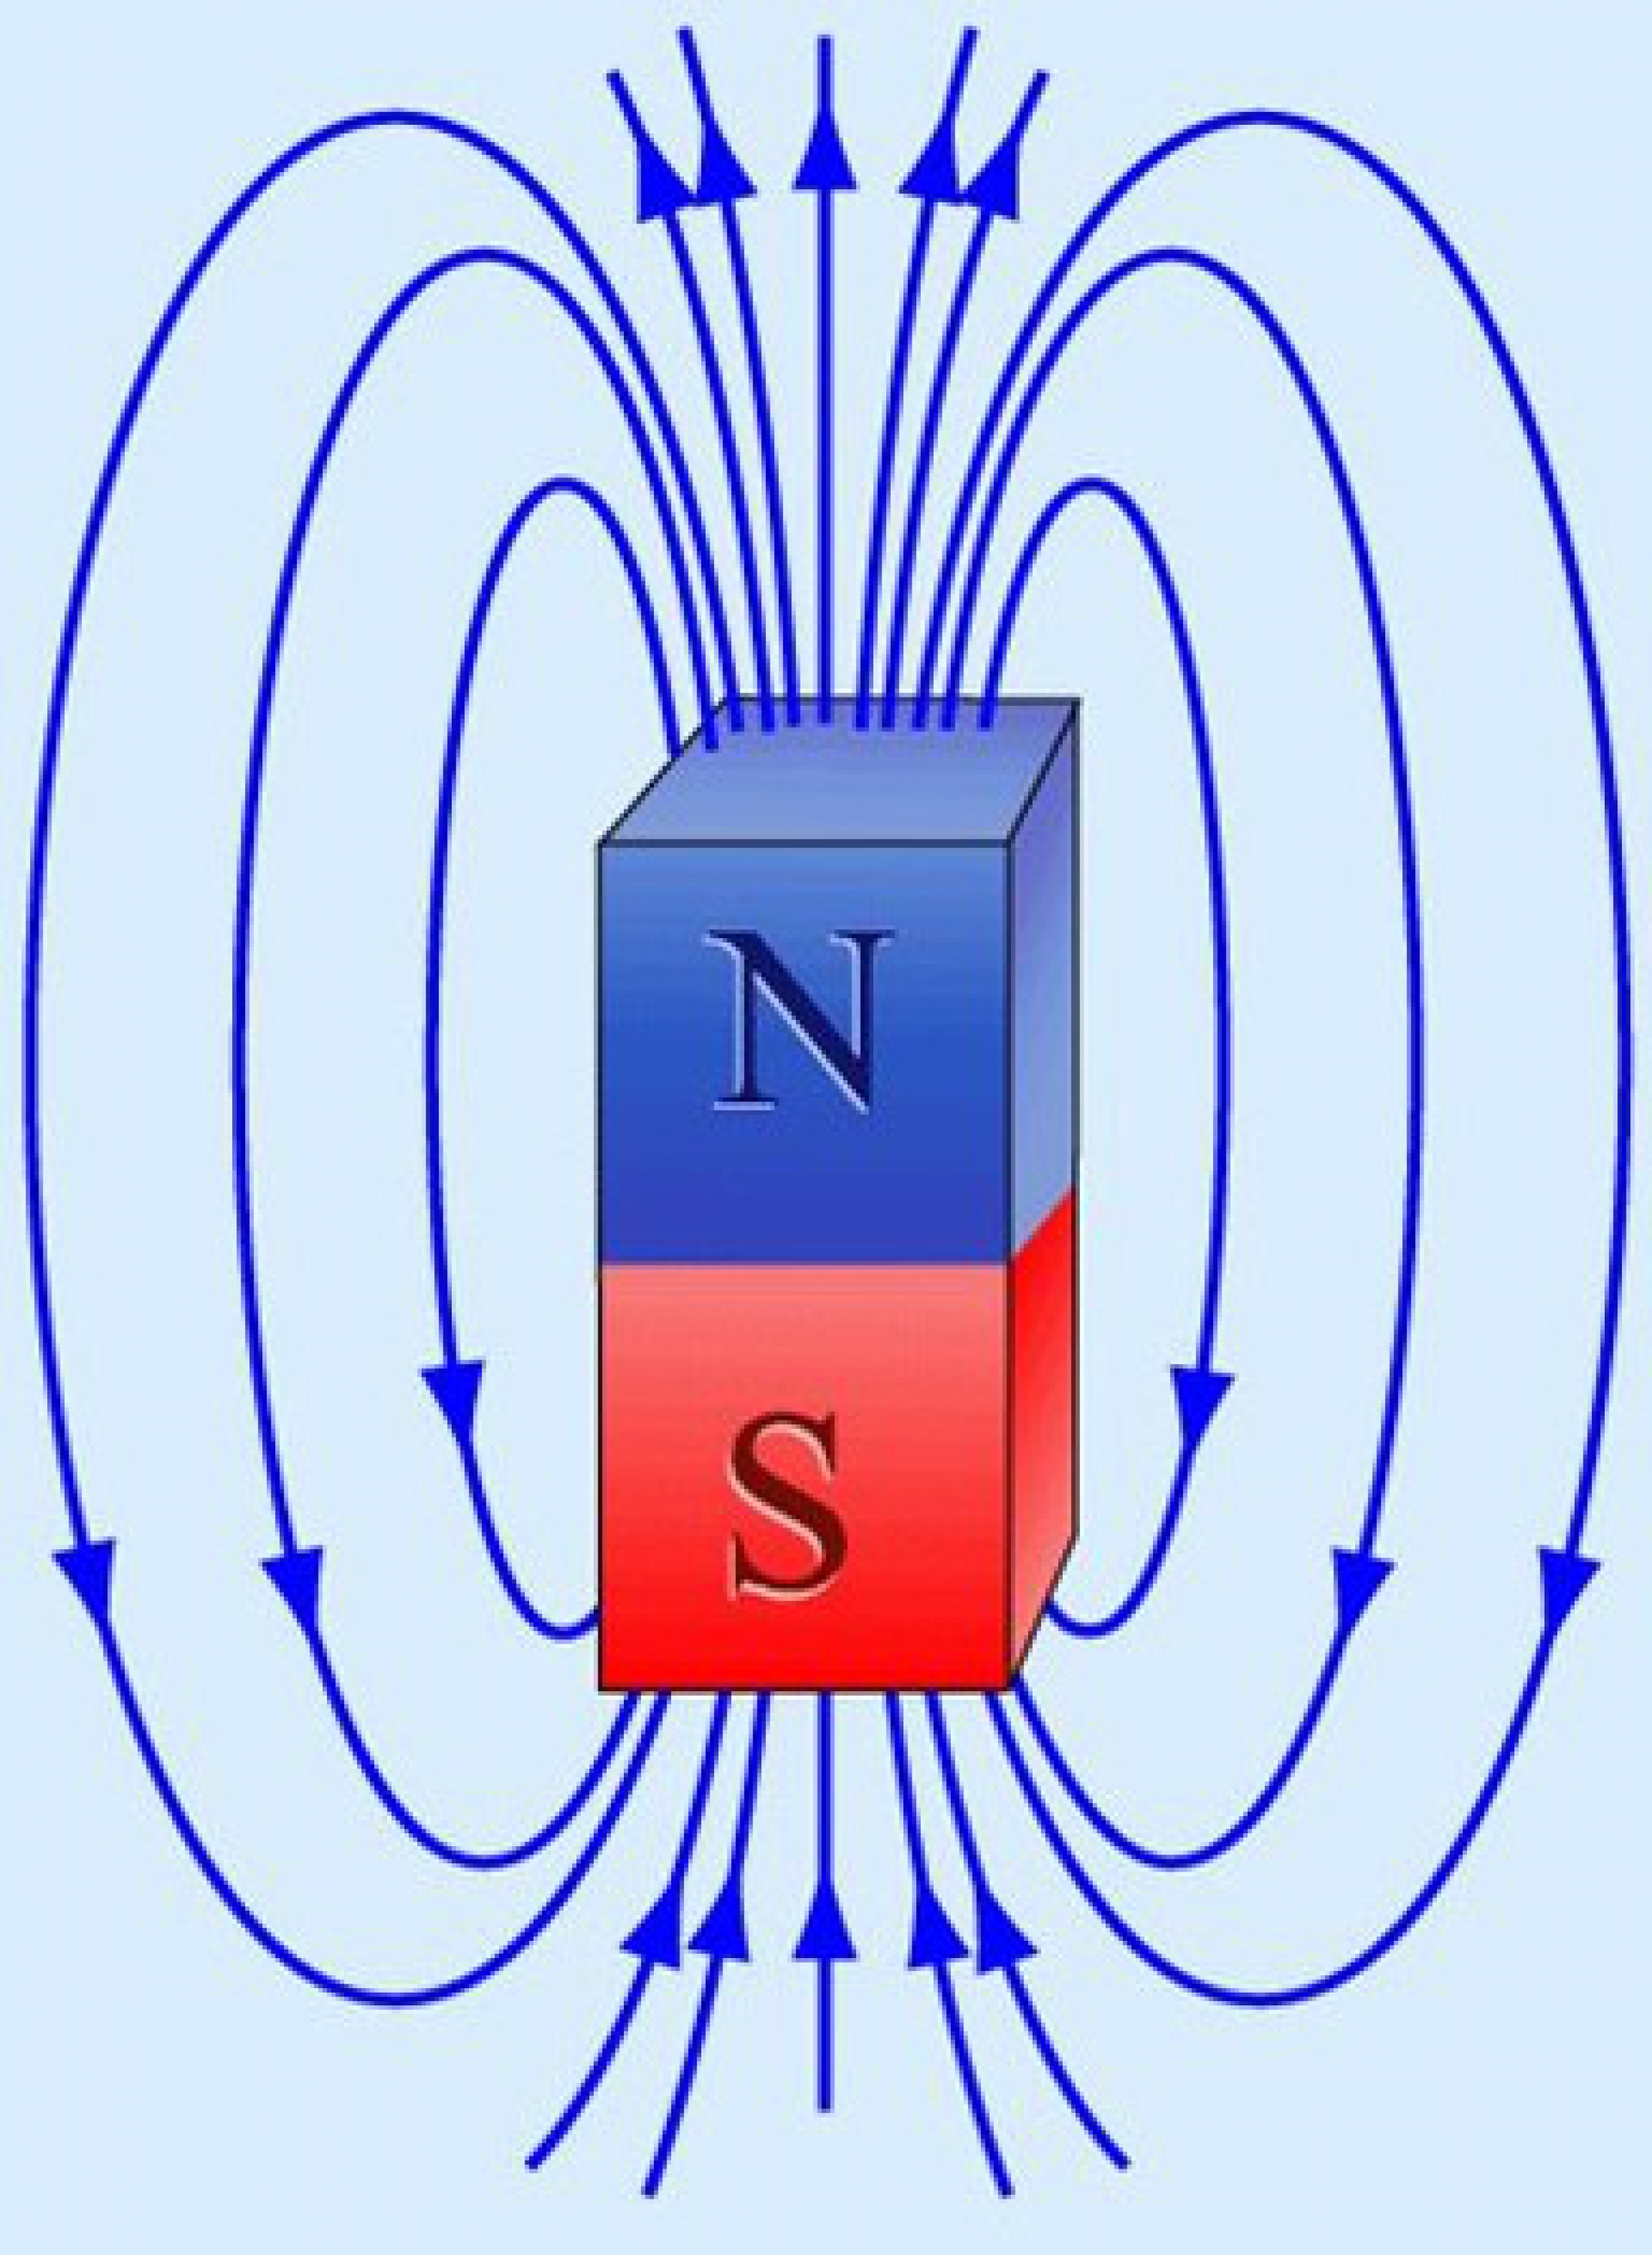 Физика магнитное поле новое. Магнитное поле полосового магнита. Изображение магнитного поля постоянного магнита. Магнитное поле постоянного магнита рисунок. Схема магнитного поля постоянного магнита.